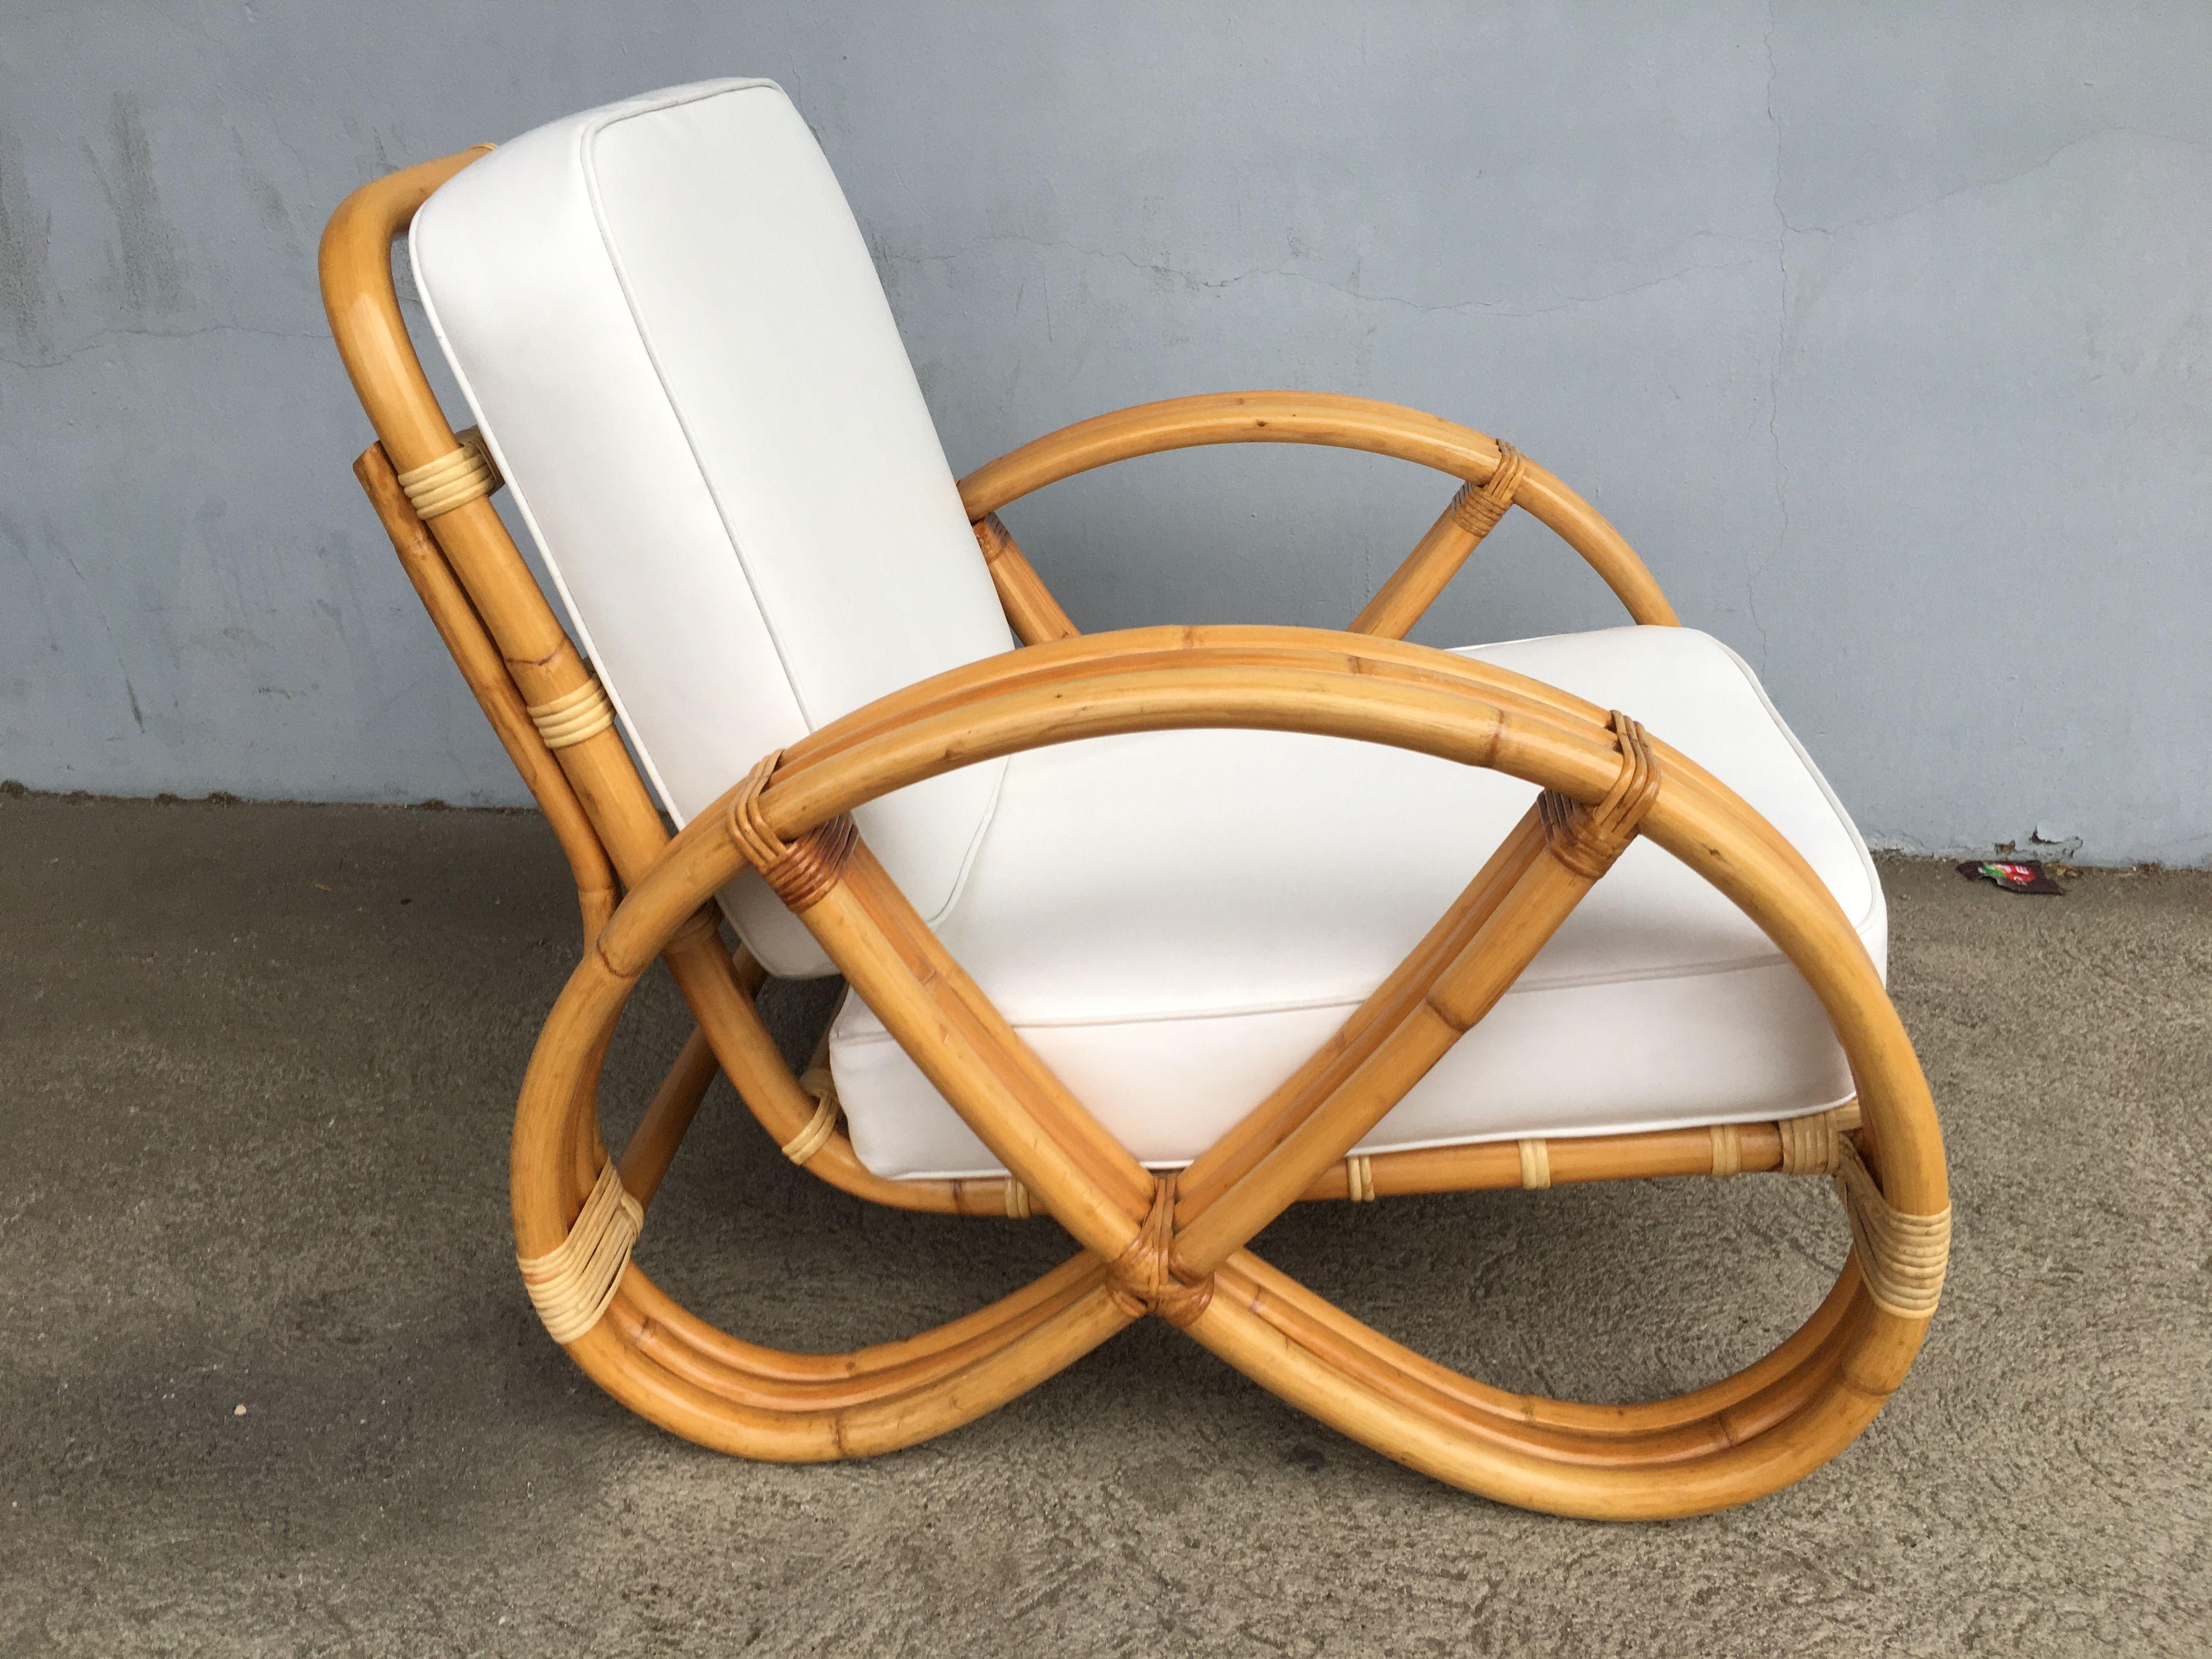 pretzel chairs for sale